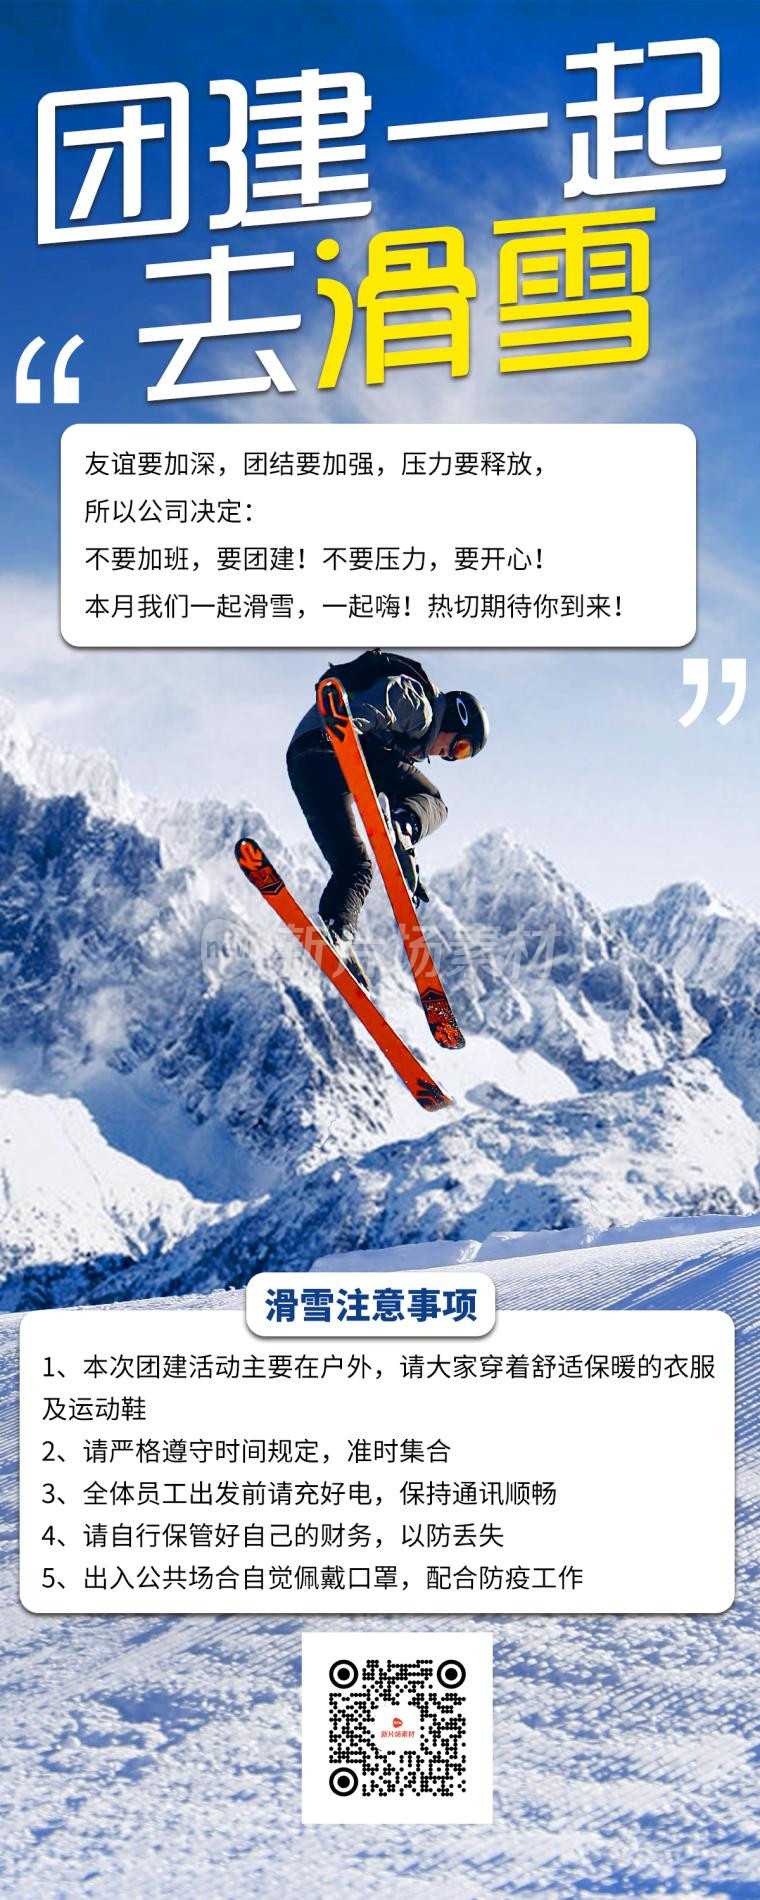 团建滑雪简约海报长图